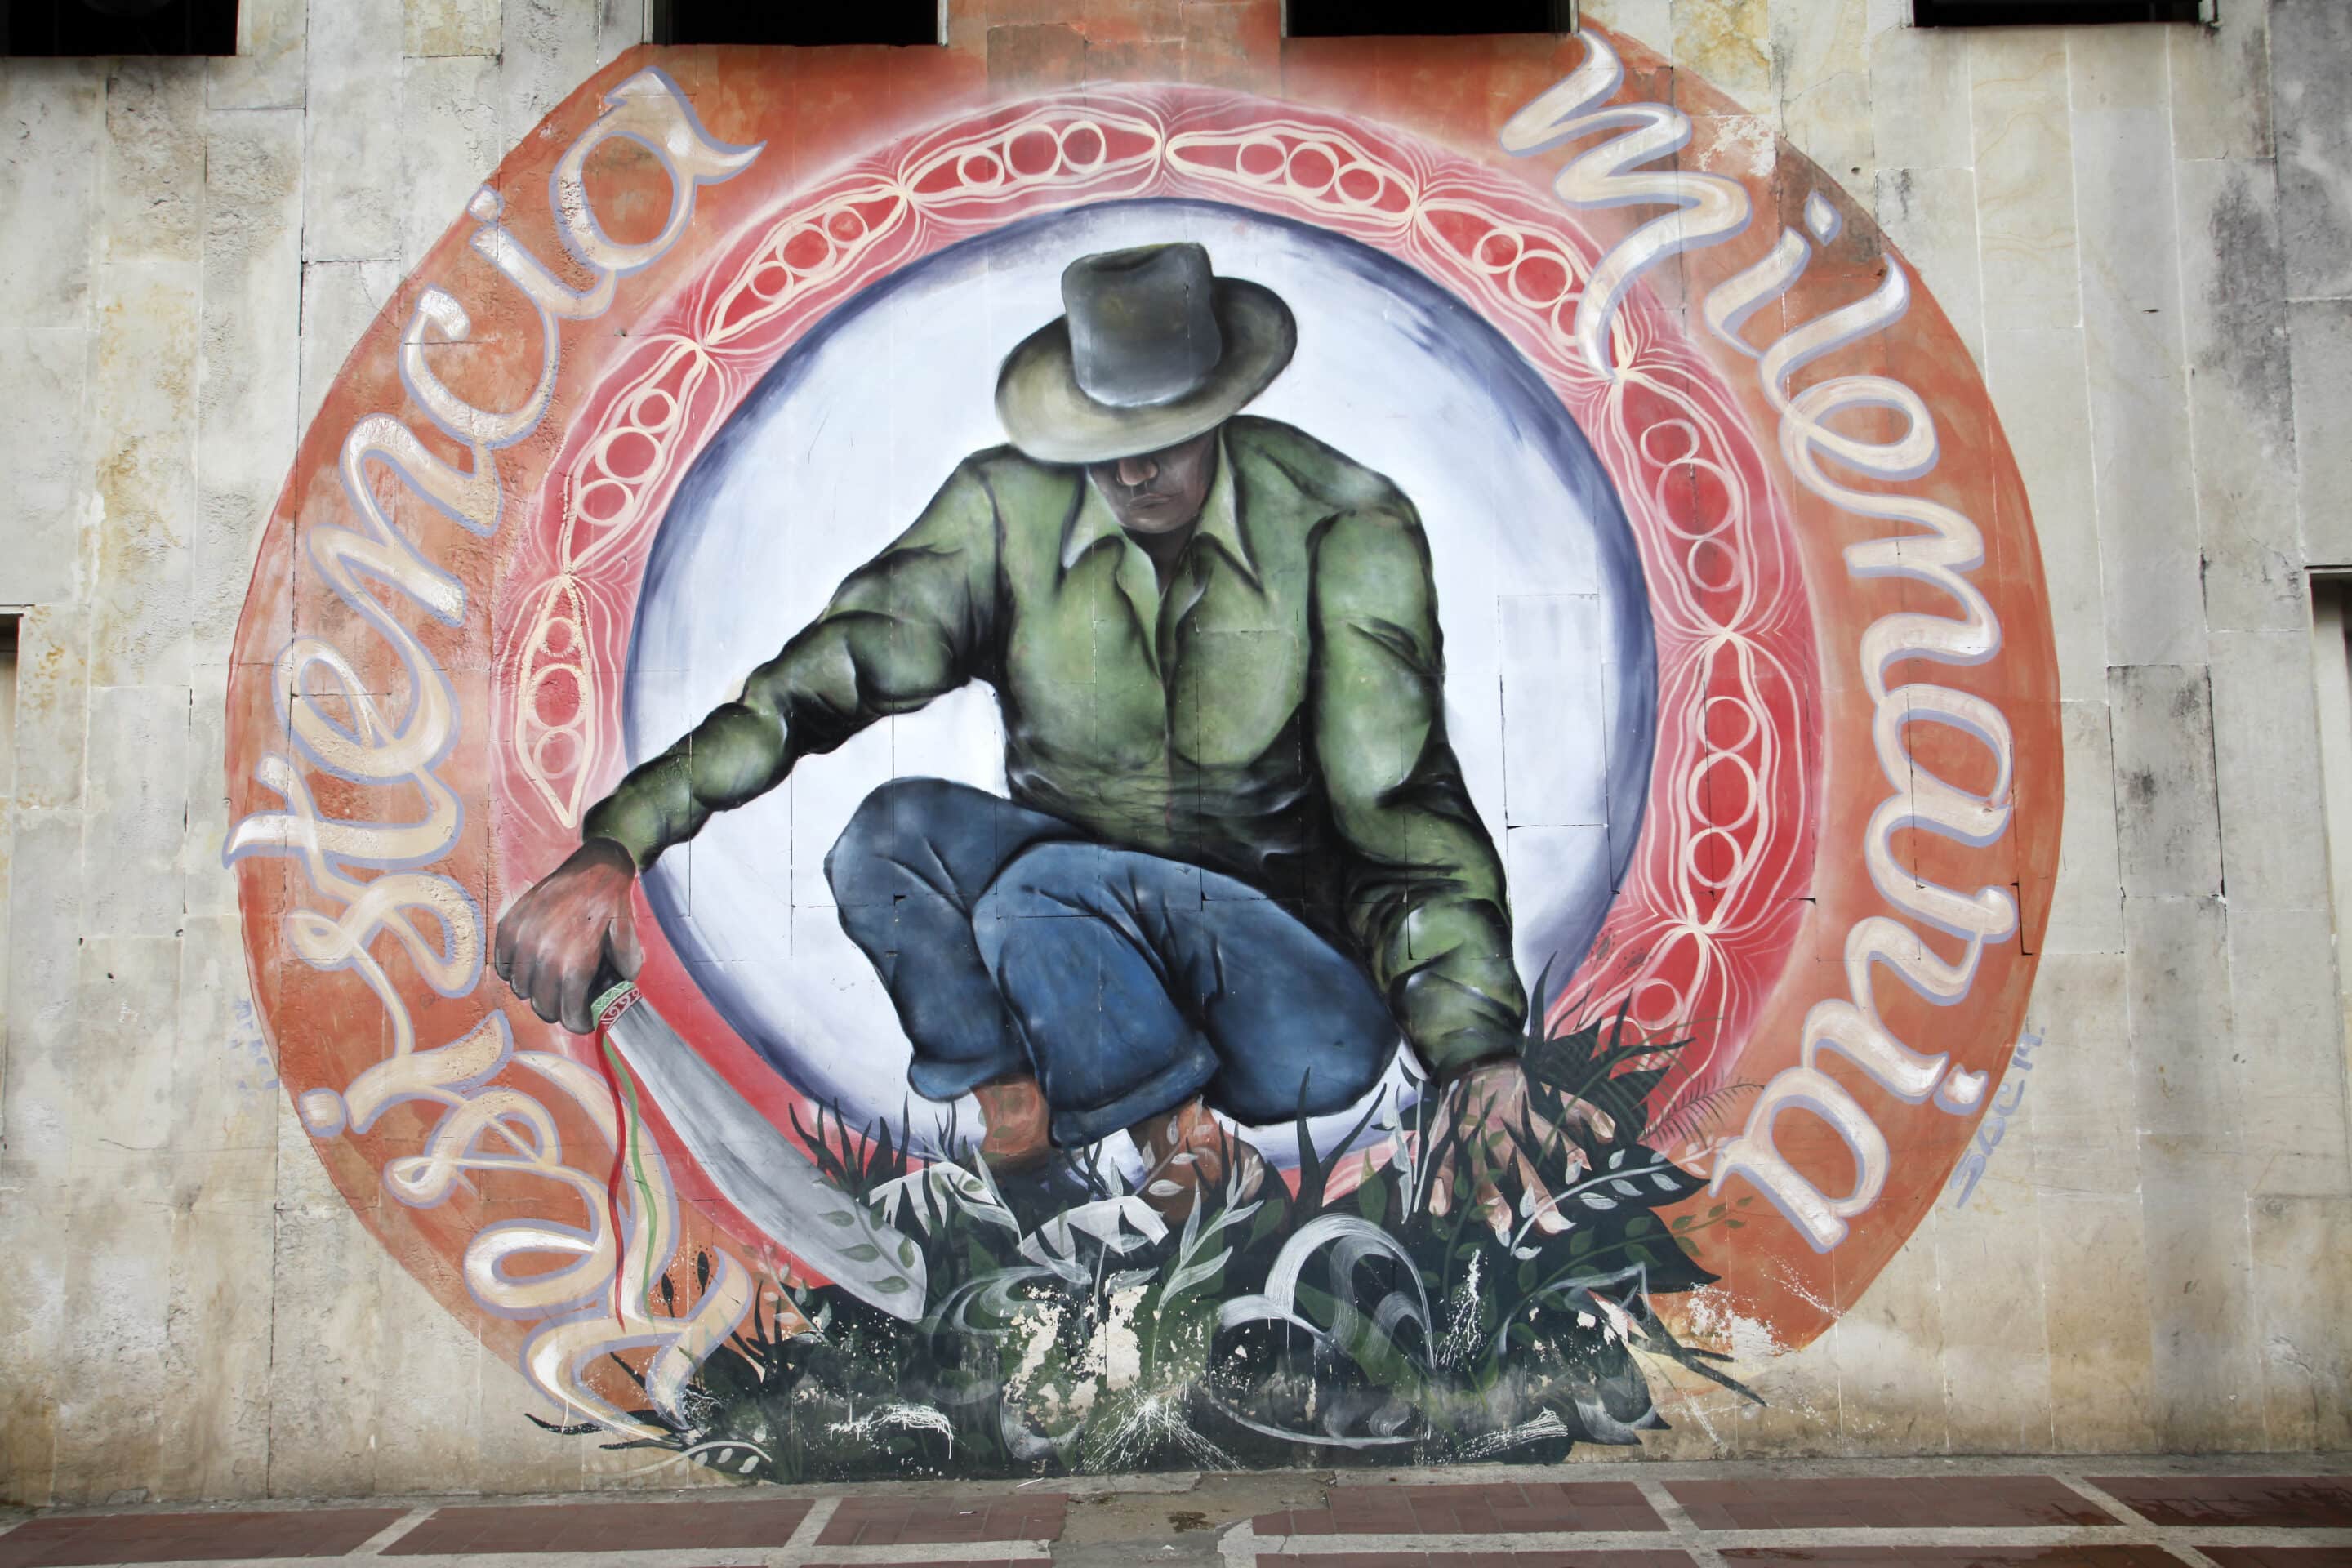 A Florida (département de Valle del Cauca), fresque à la gloire du "cocalero"   indigène avec le slogan "Résistance millénaire". Preuve que la culture de la coca est ancrée dans les moeurs et difficile à éradiquer.